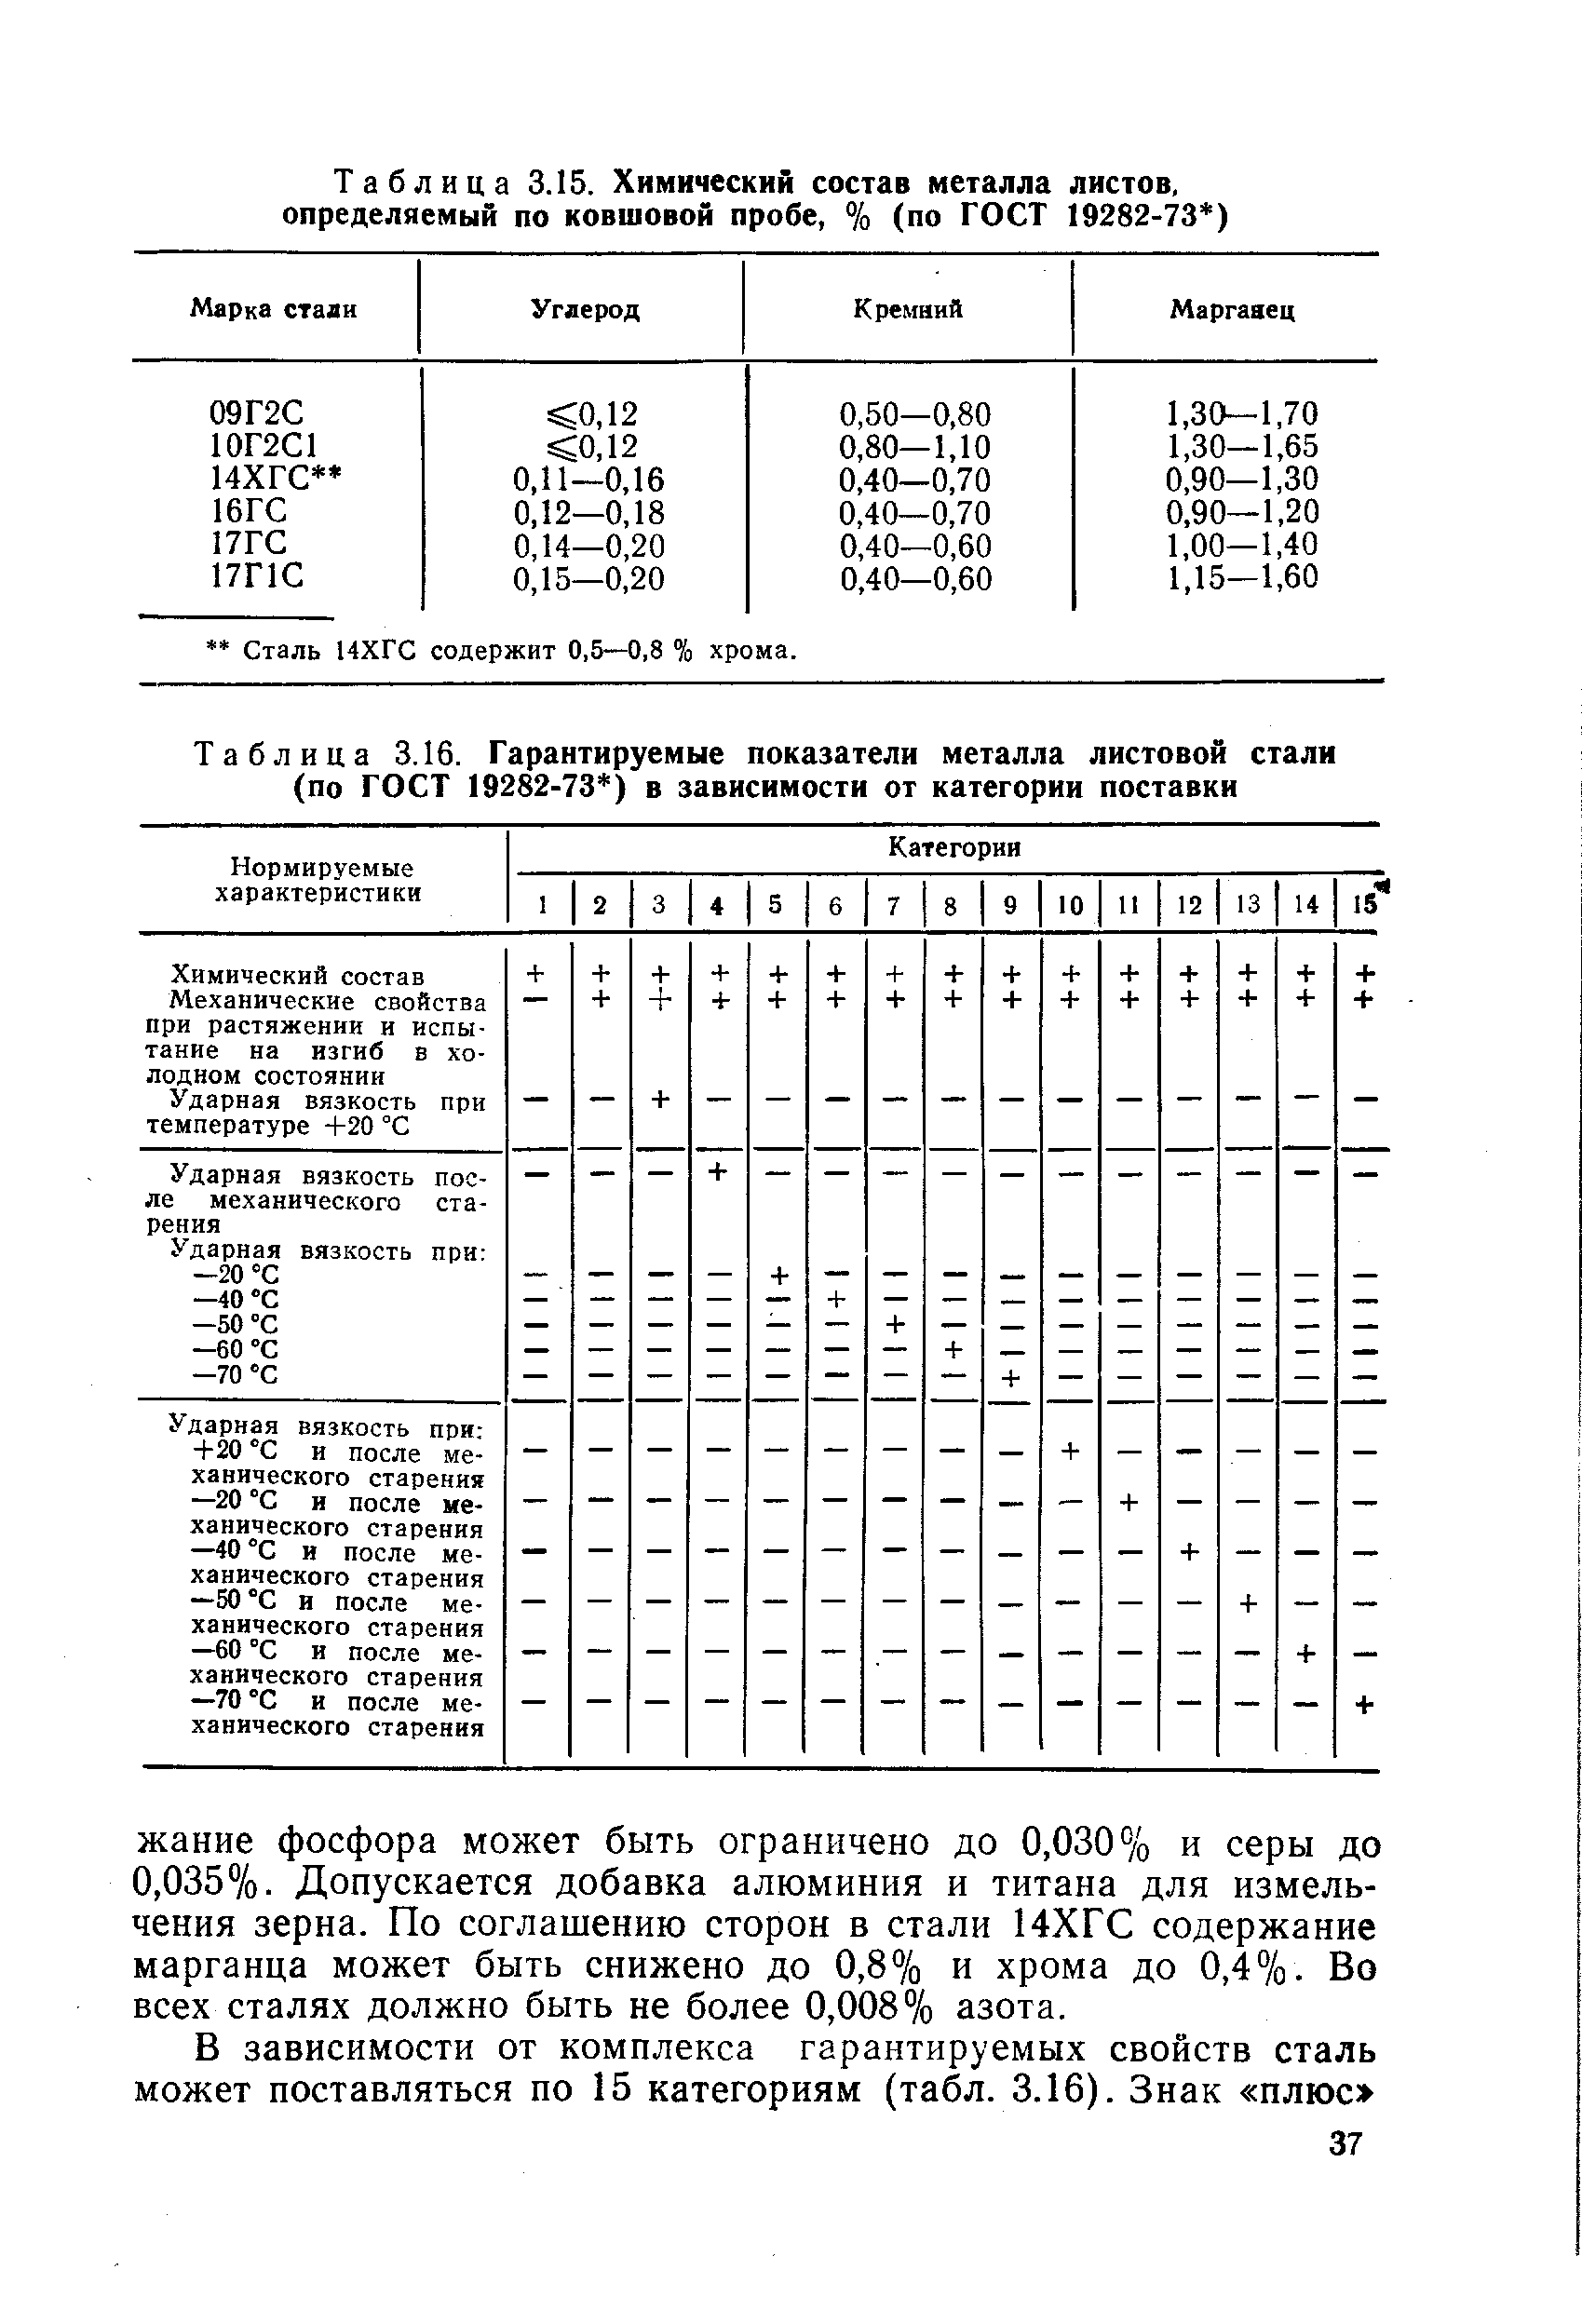 Таблица 3.16. Гарантируемые показатели металла листовой стали (по ГОСТ 19282-73 ) в зависимости от категории поставки
